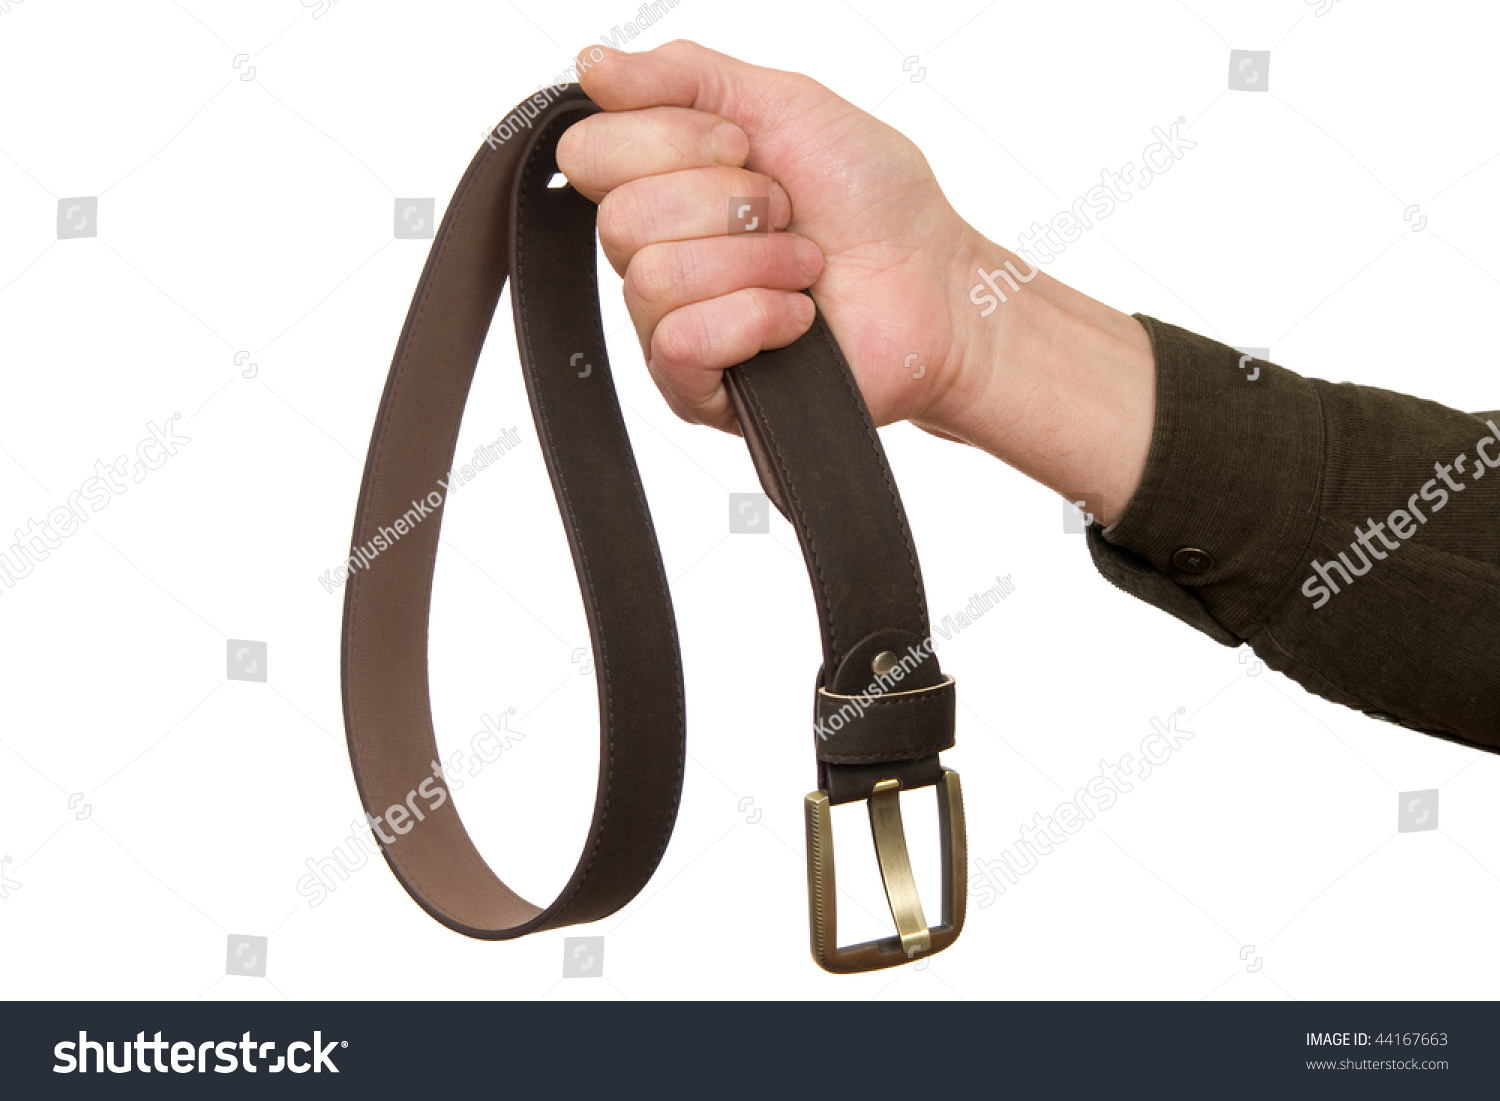 Image result for belt in hand